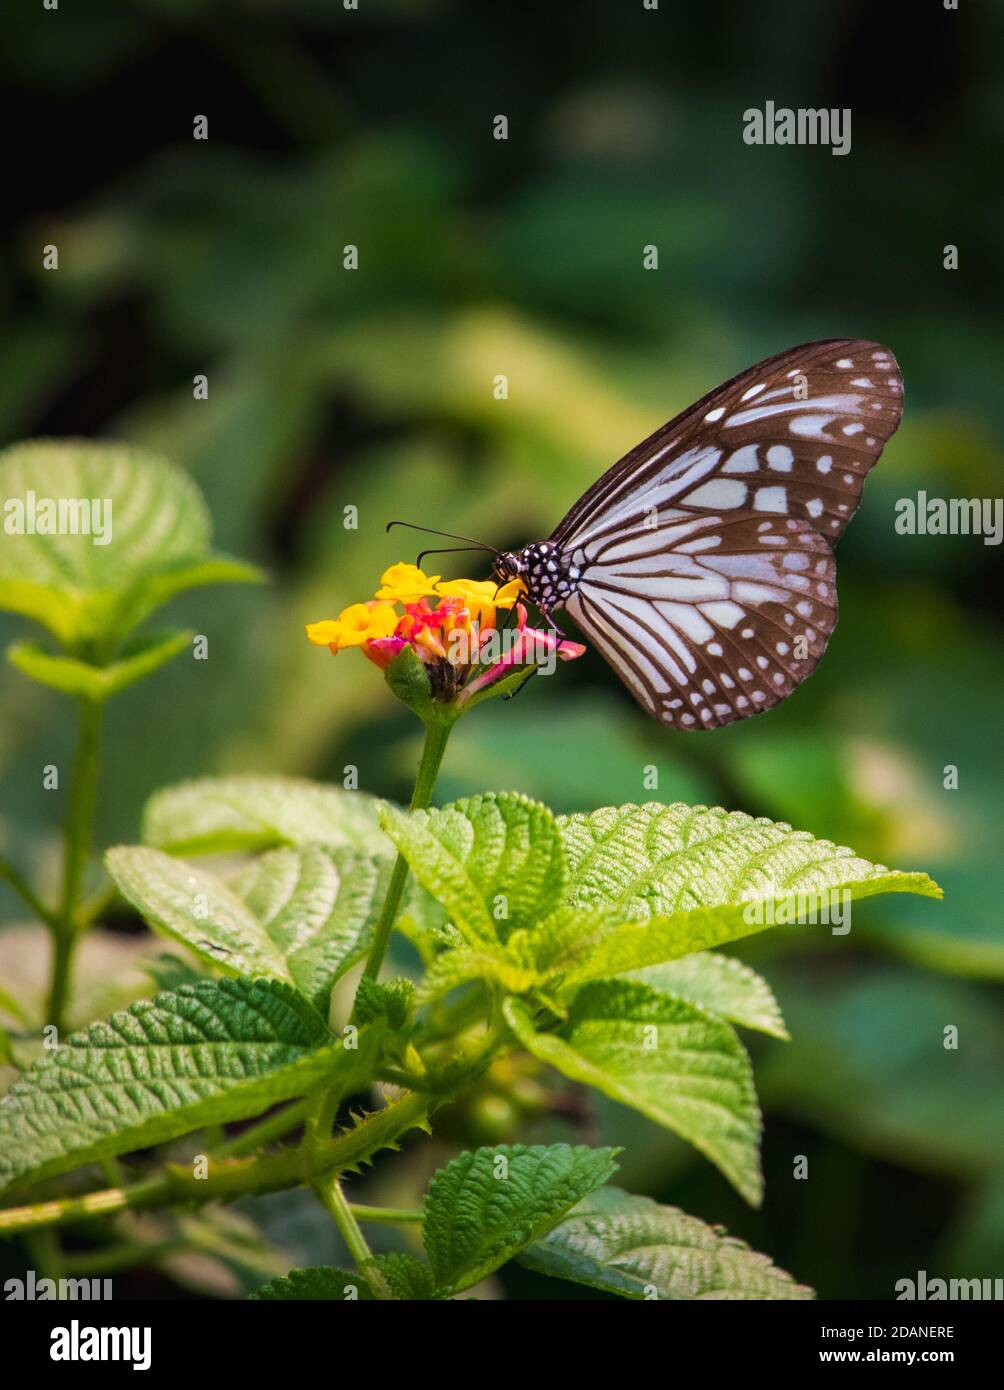 Belle vue rapprochée d'une alimentation de papillon tigre bleu vitreux miel dans une fleur jaune avec fond vert flou Banque D'Images